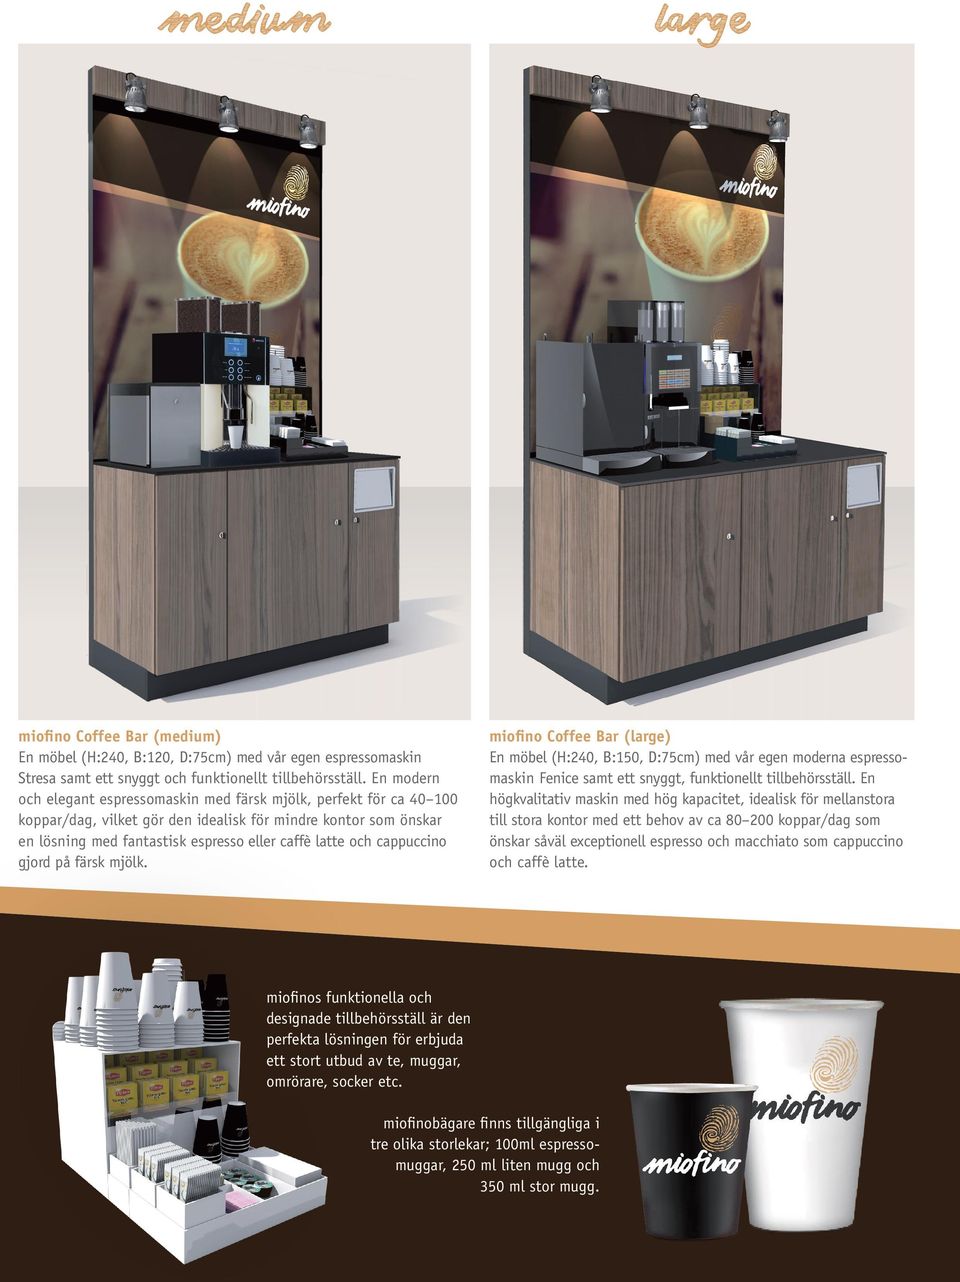 cappuccino gjord på färsk mjölk. miofino Coffee Bar (large) En möbel (H:240, B:150, D:75cm) med vår eg moderna espresso maskin Fice samt ett snyggt, funktionellt tillbehörsställ.